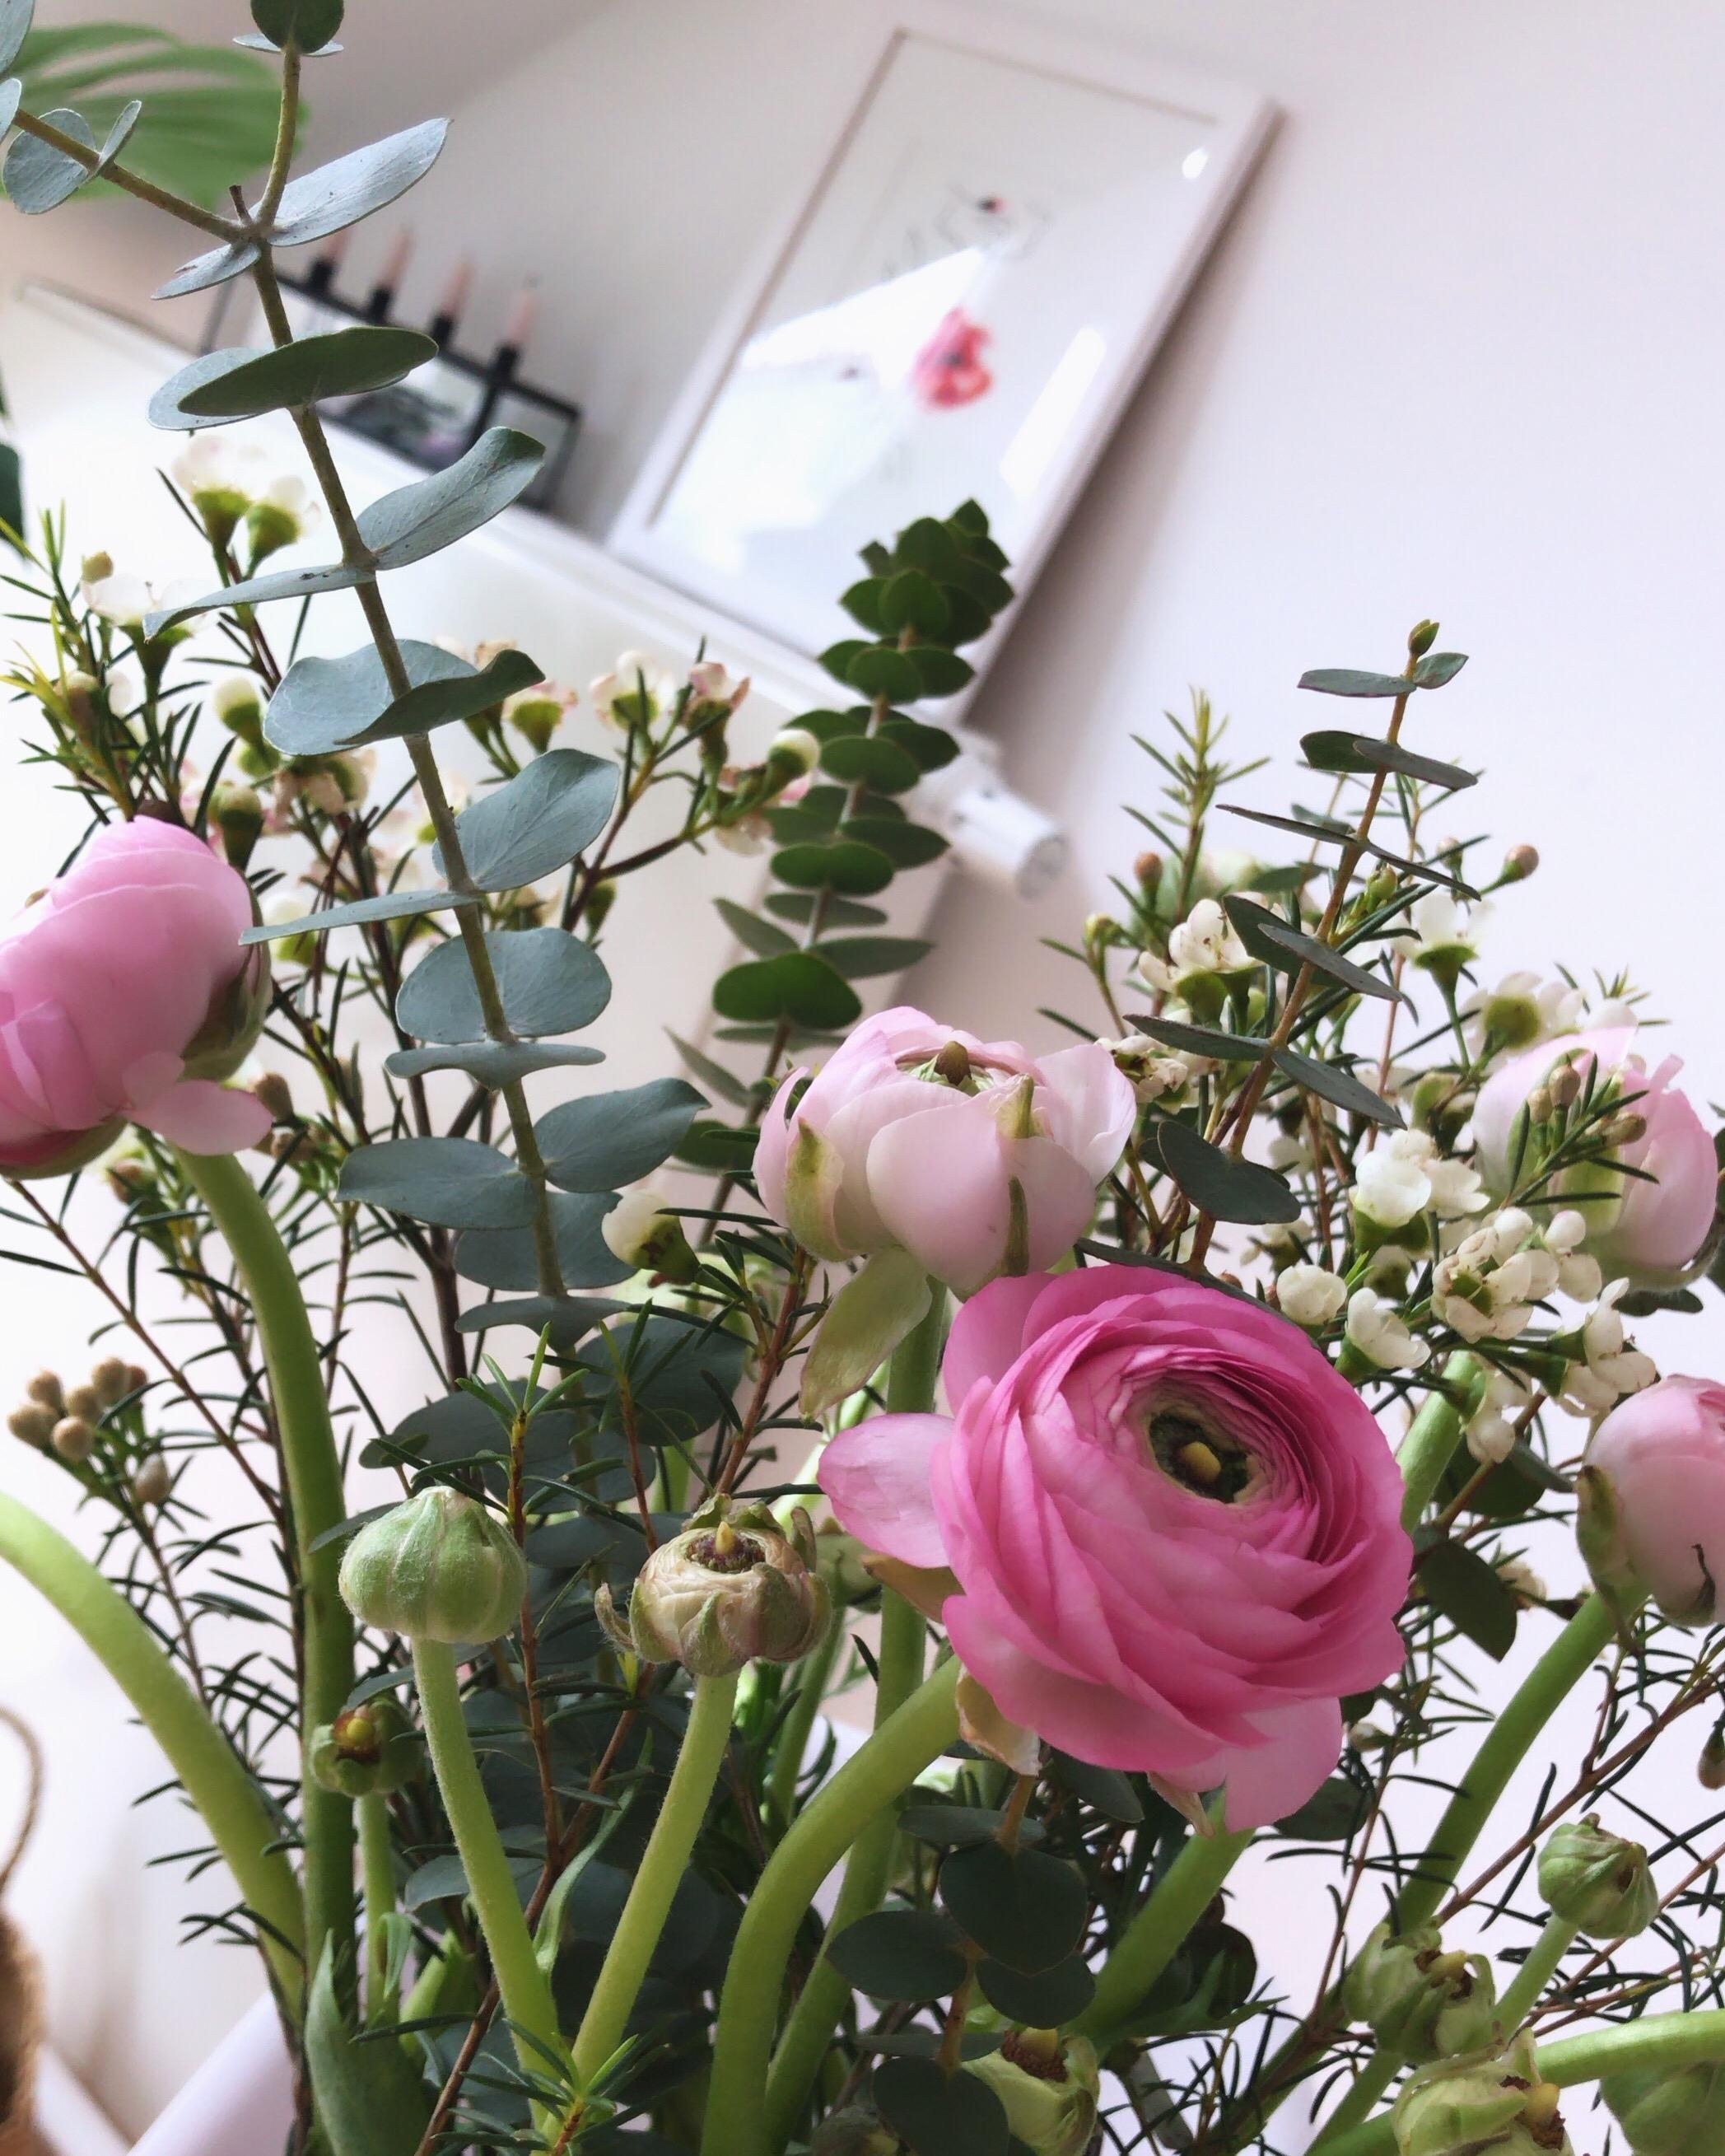 Ohne Blumen geht bei mir in der Wohnung nichts... #couchliebt #blumen #dekoration